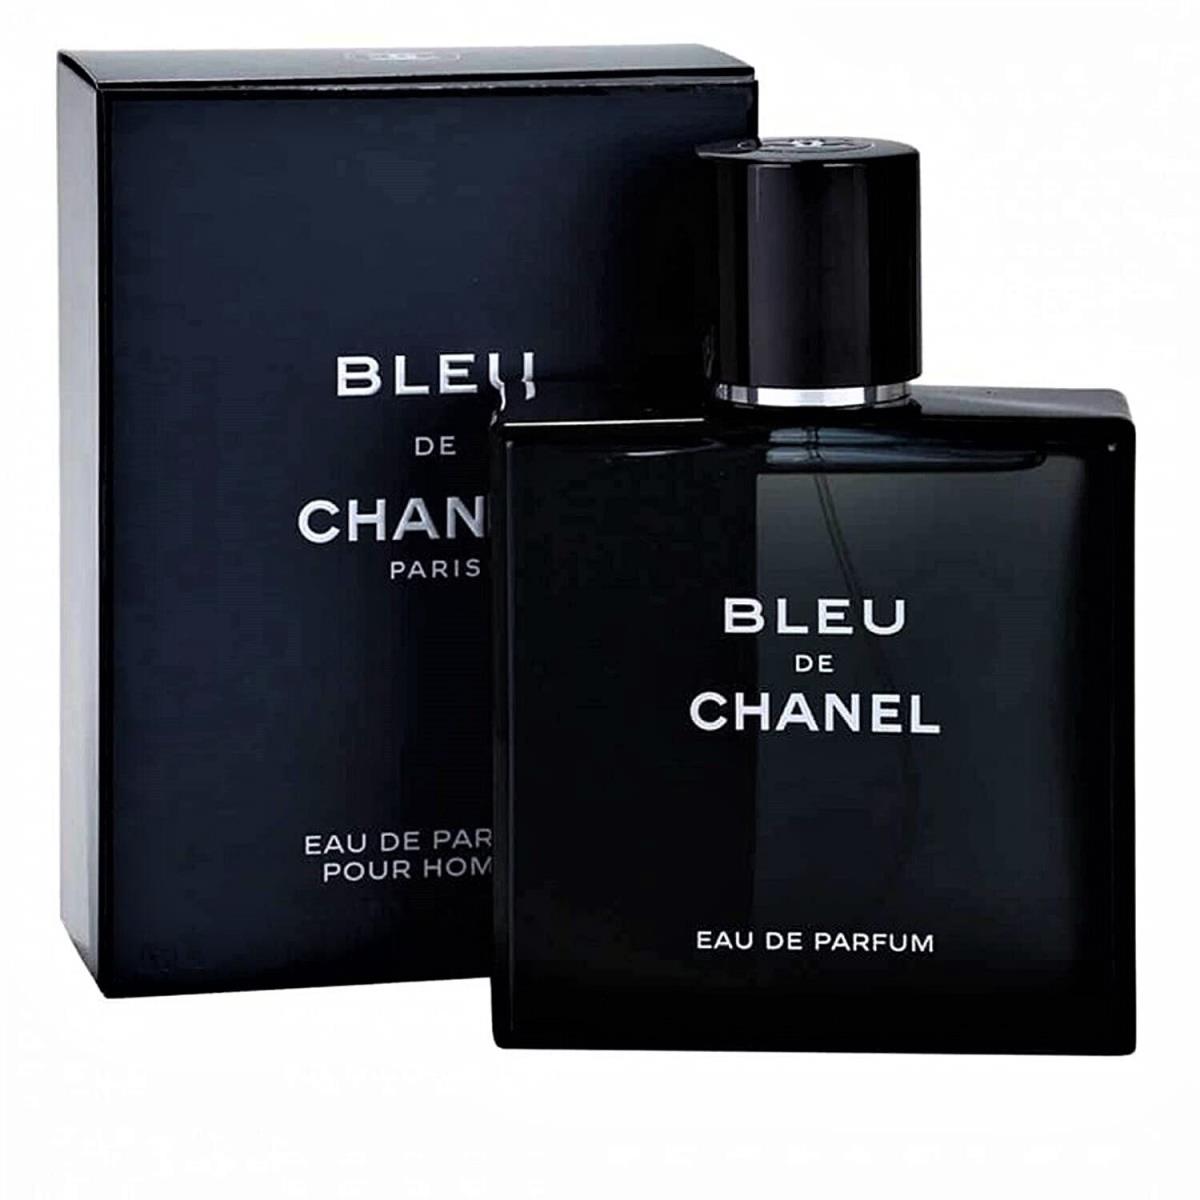 Bleu DE Chanel 5.0 Fl.oz Eau De Parfum Spray As Shown